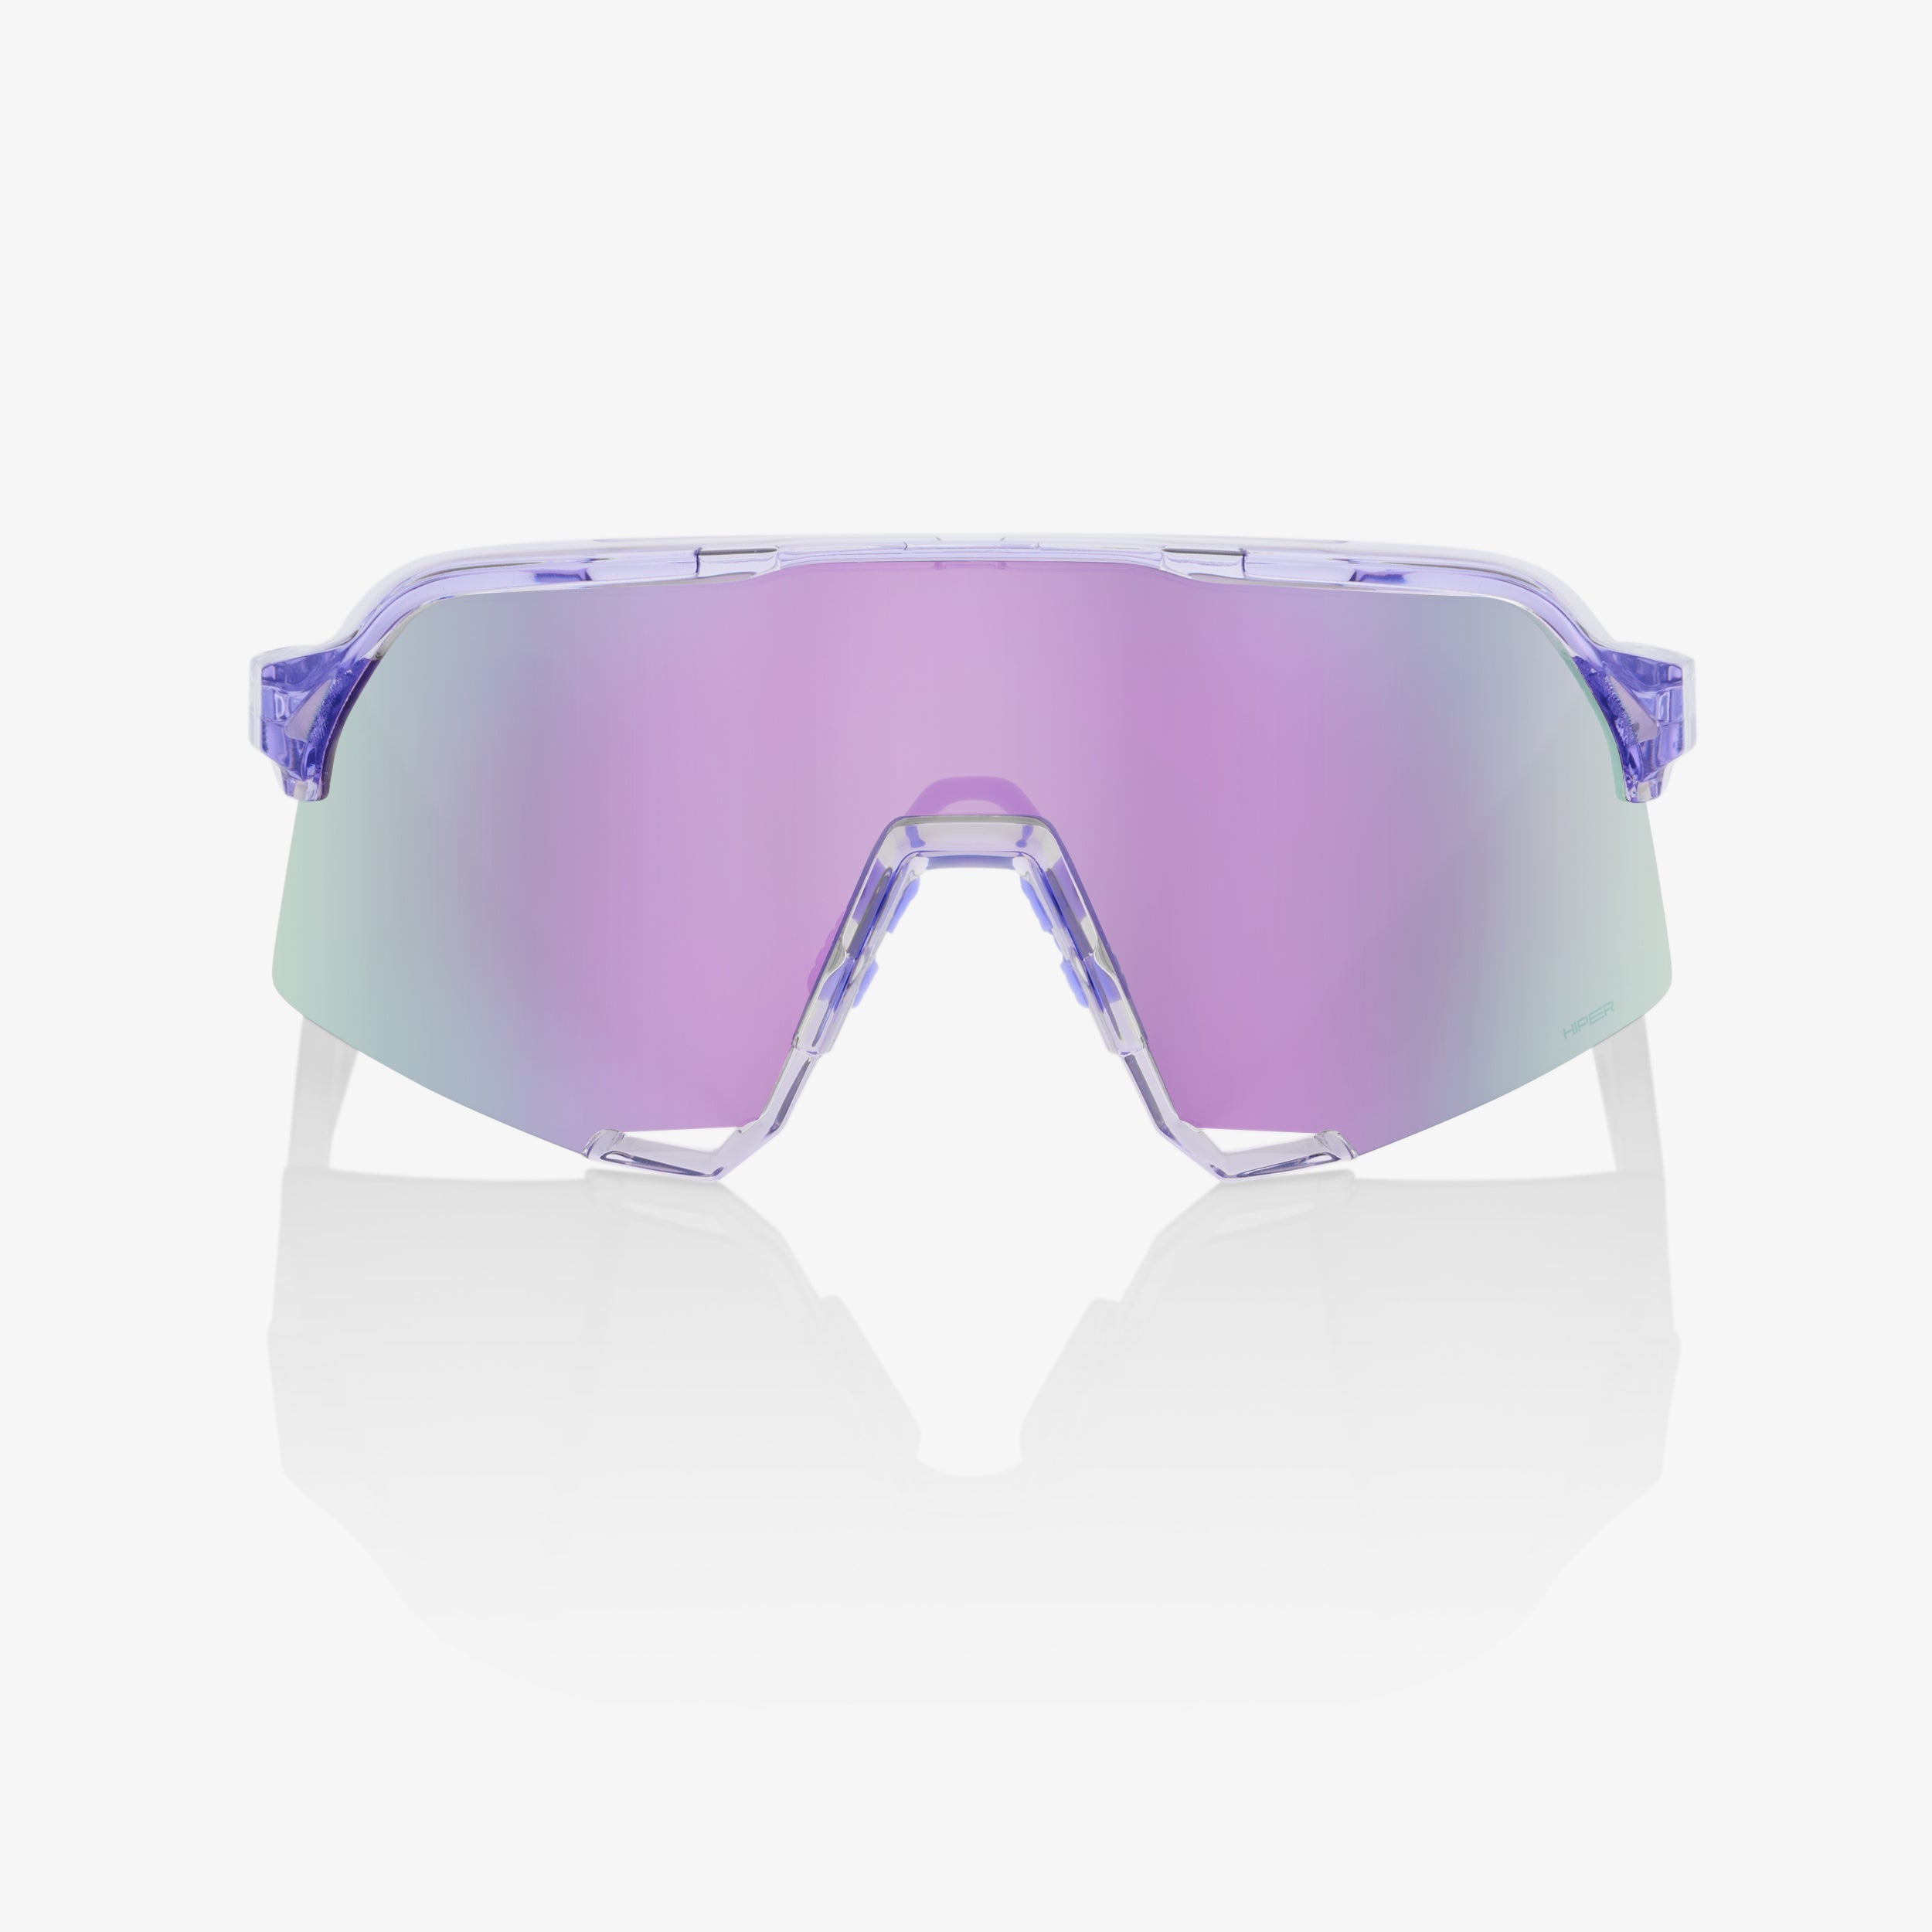 S3 - Polished Translucent Lavender - HiPER® Lavender Mirror Lens